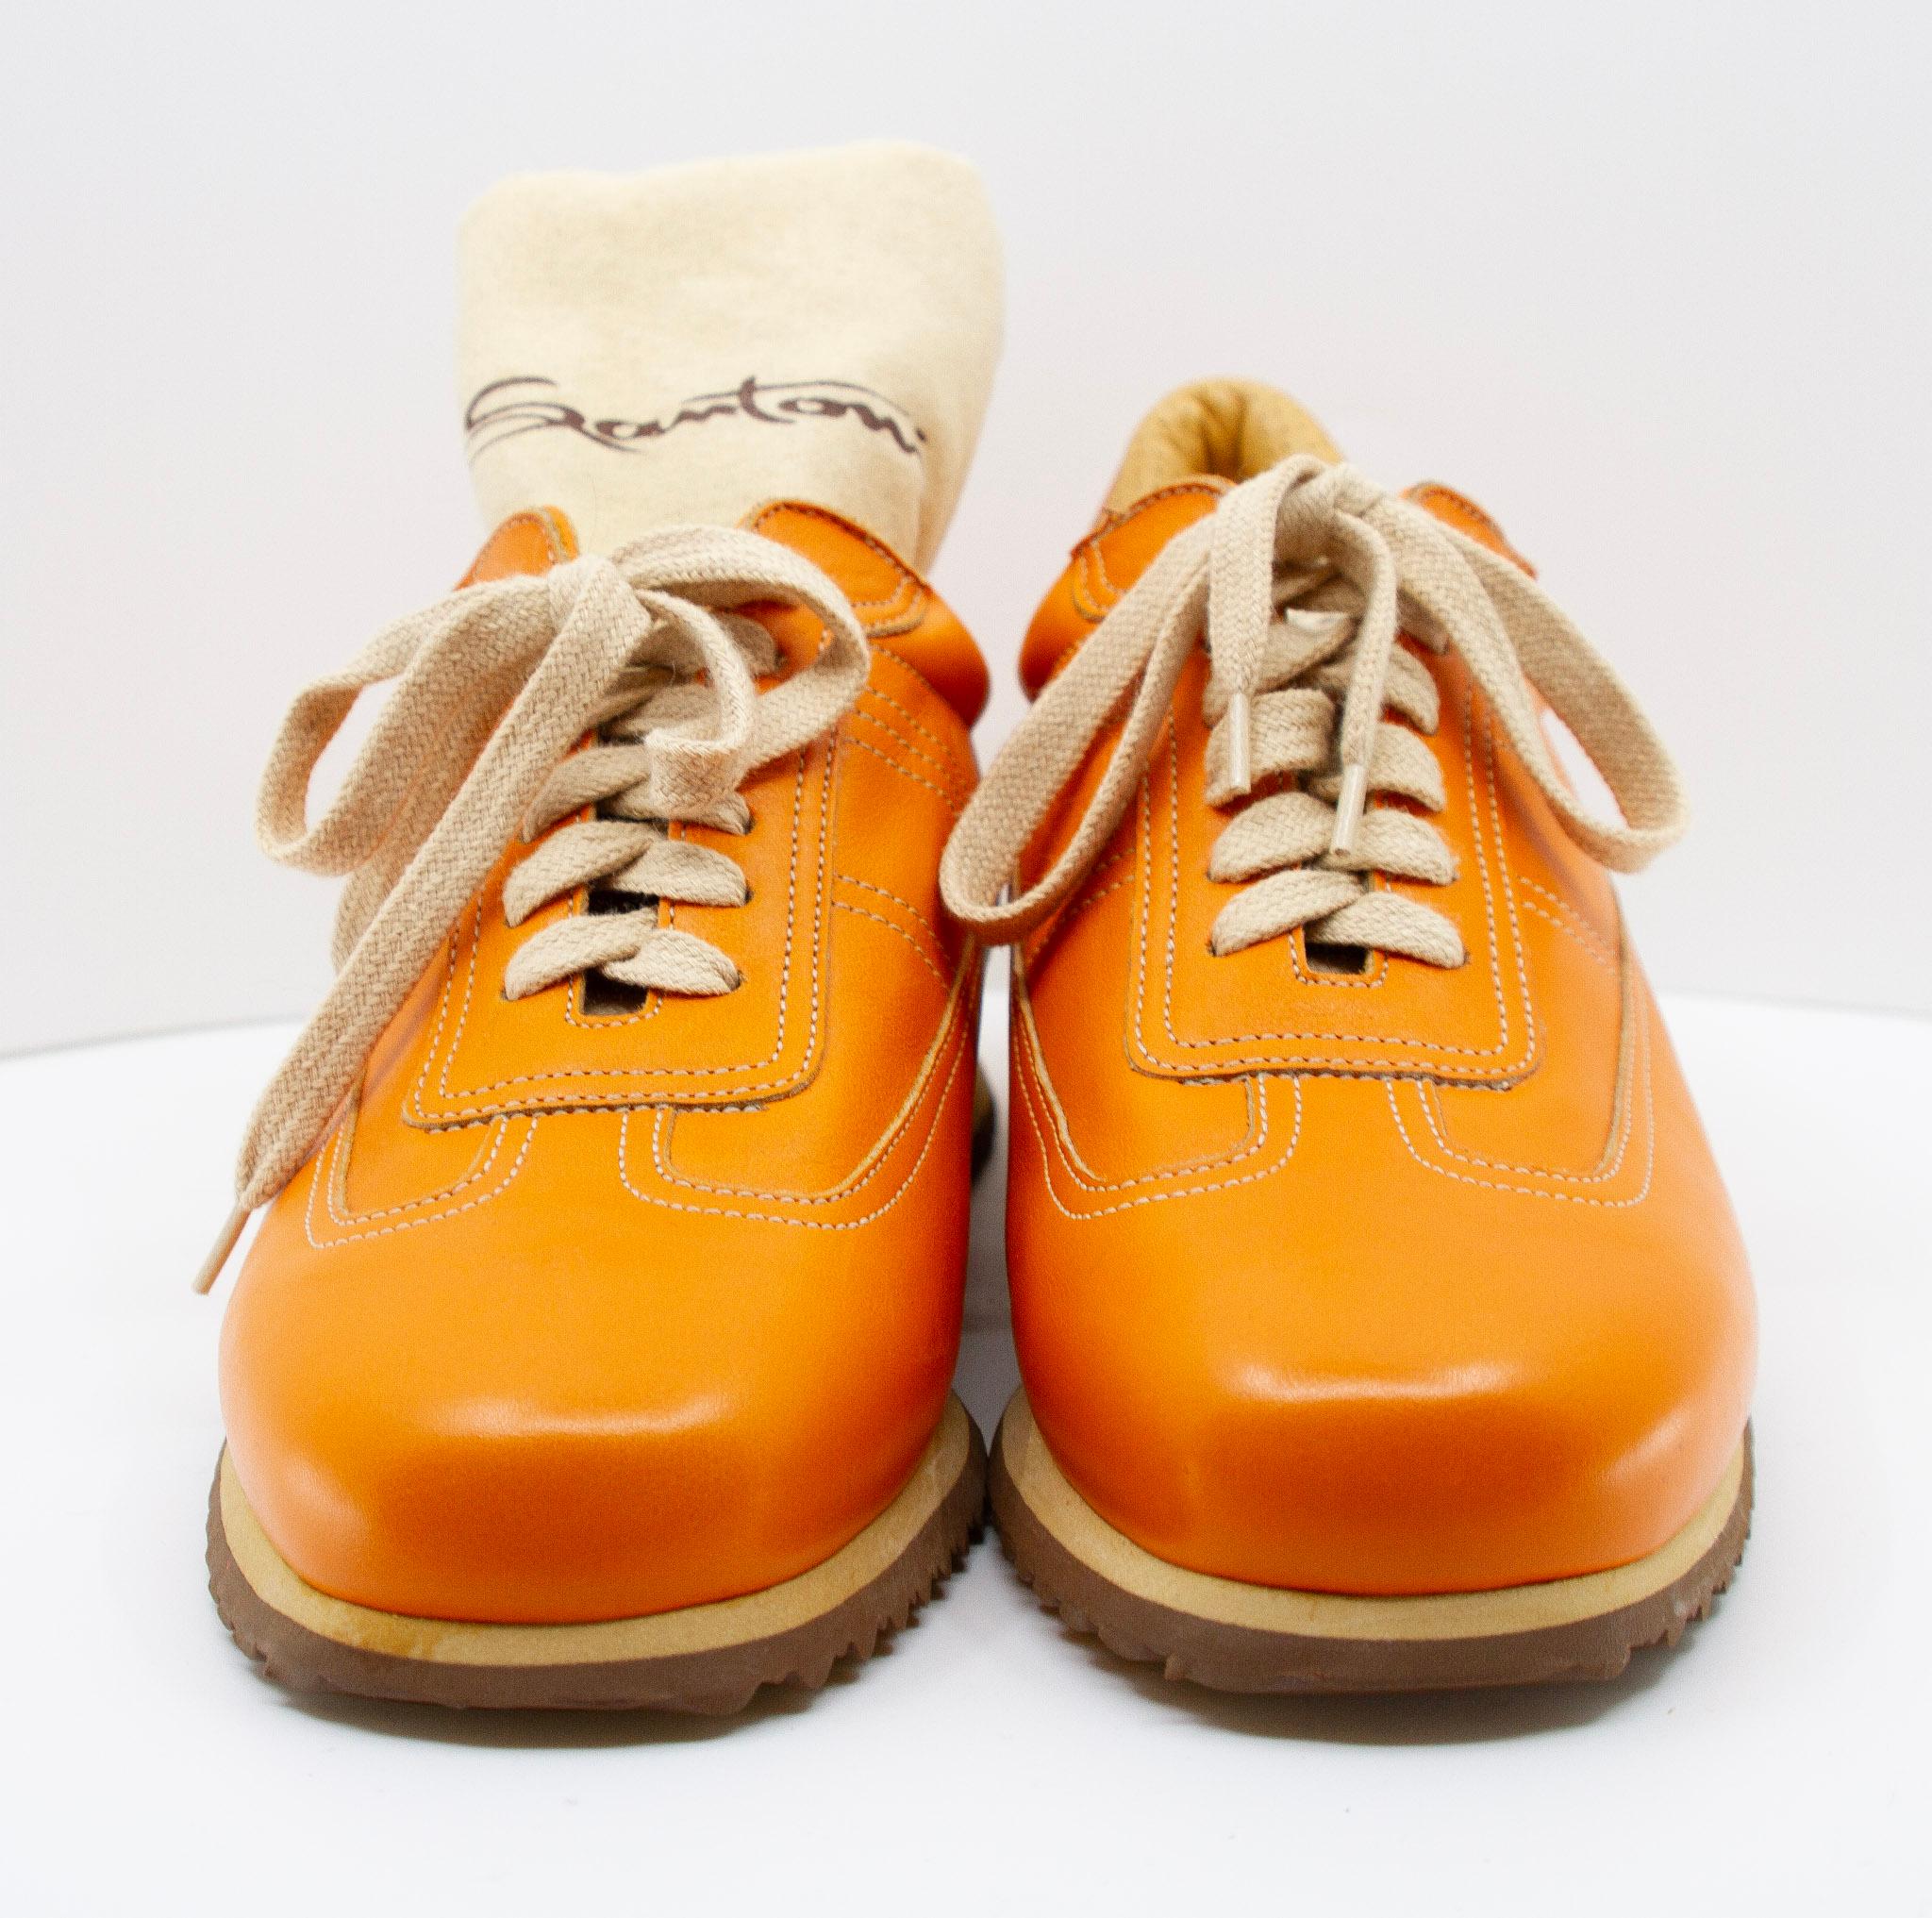  Santoni Turnschuhe aus orangefarbenem Leder, in Größe 35. Diese in Italien gefertigten Sneaker haben ein orangefarbenes Obermaterial aus Leder, eine abgerundete Spitze, Kontrastnähte, cremefarbene Schnürsenkel, eine Innensohle aus Leder und eine